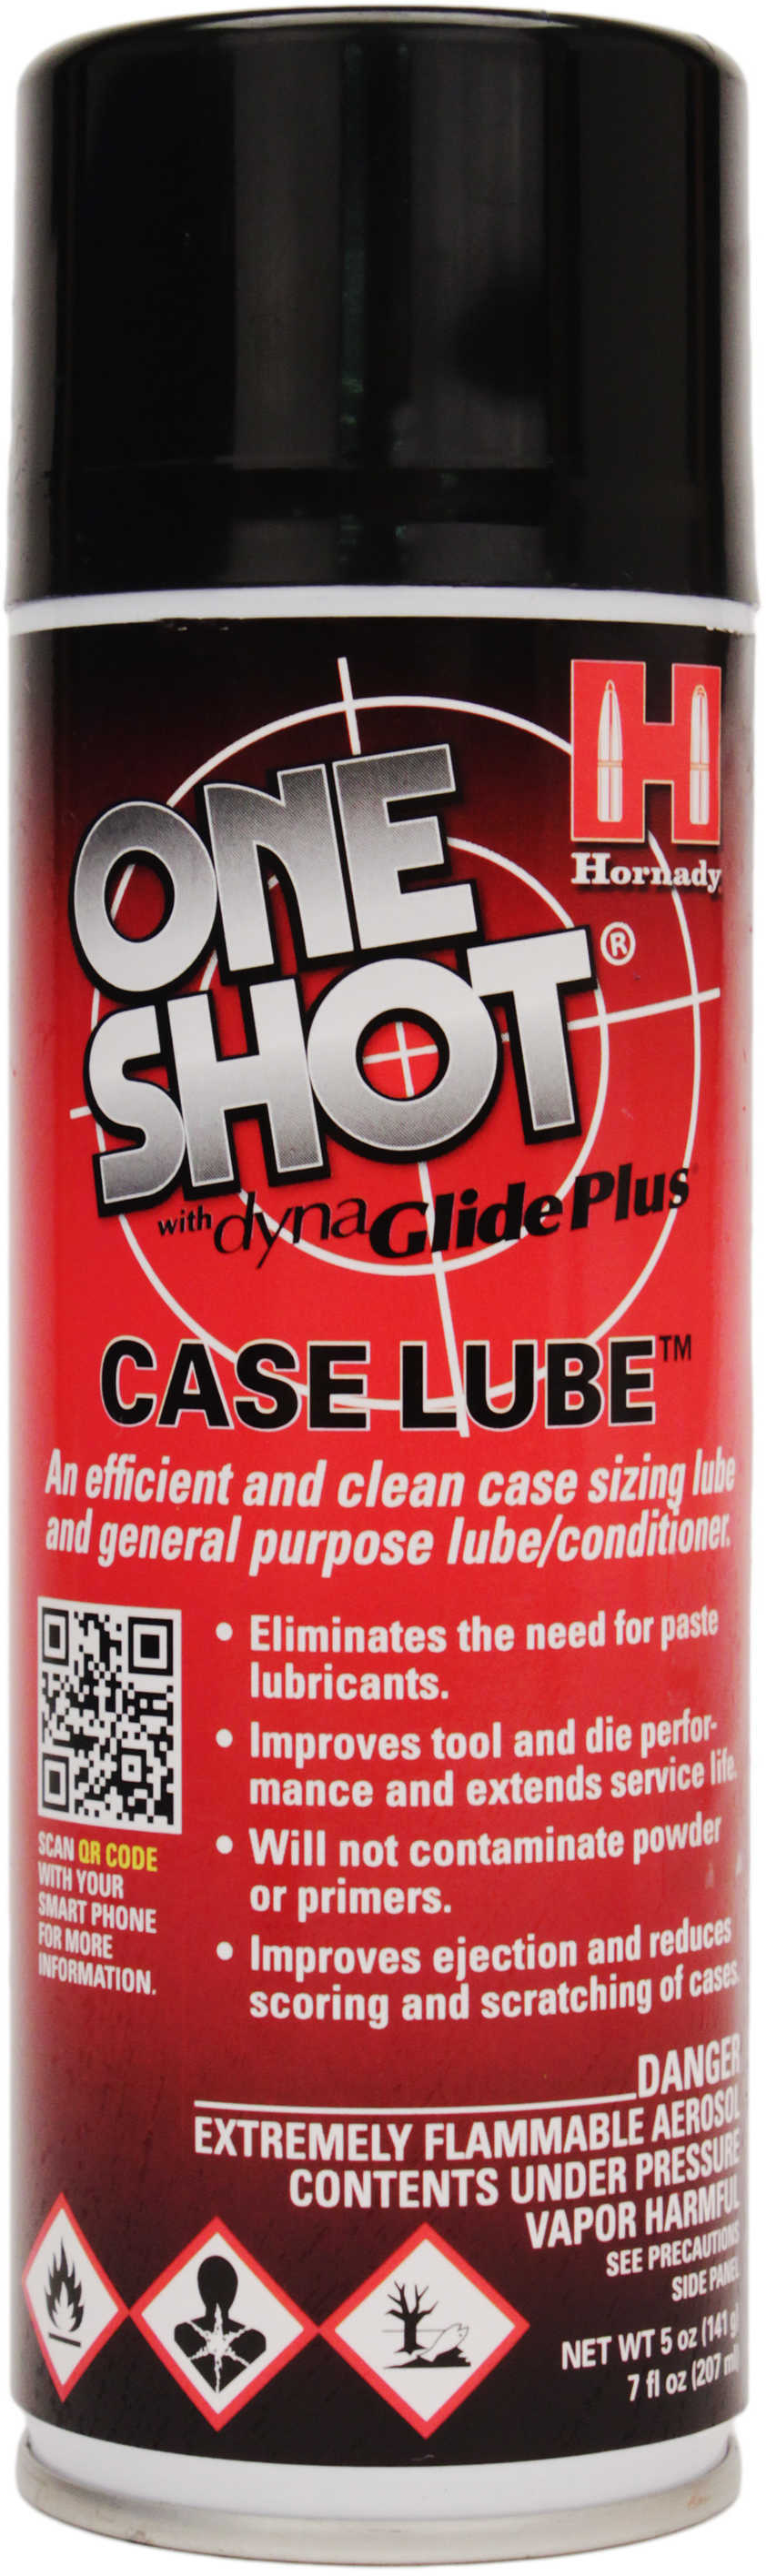 Hornady One Shot Spray Case Lube-img-1